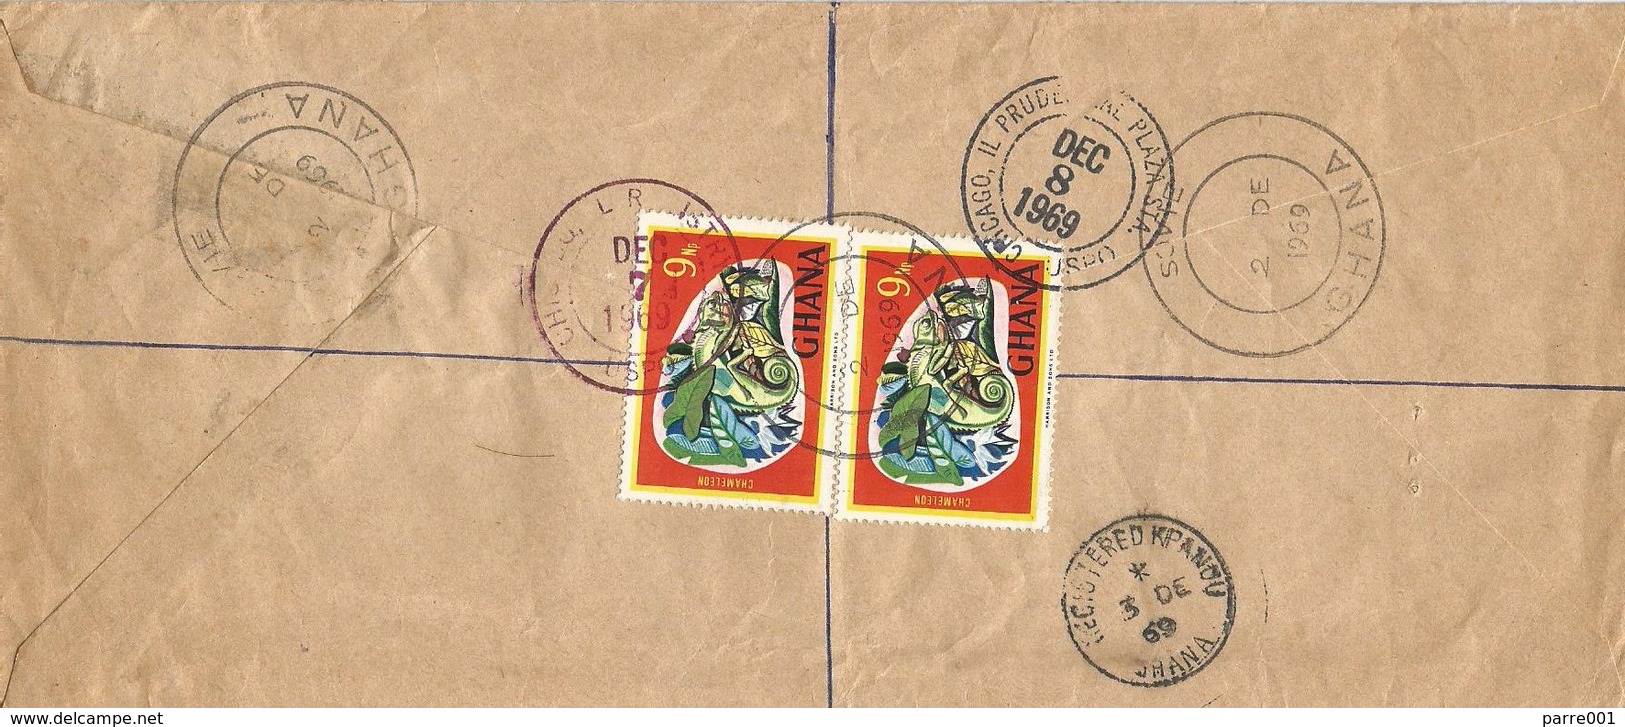 Ghana 1969 Sovie Volta Region Chameleon Registered Cover. Rare Small Post Office - Ghana (1957-...)